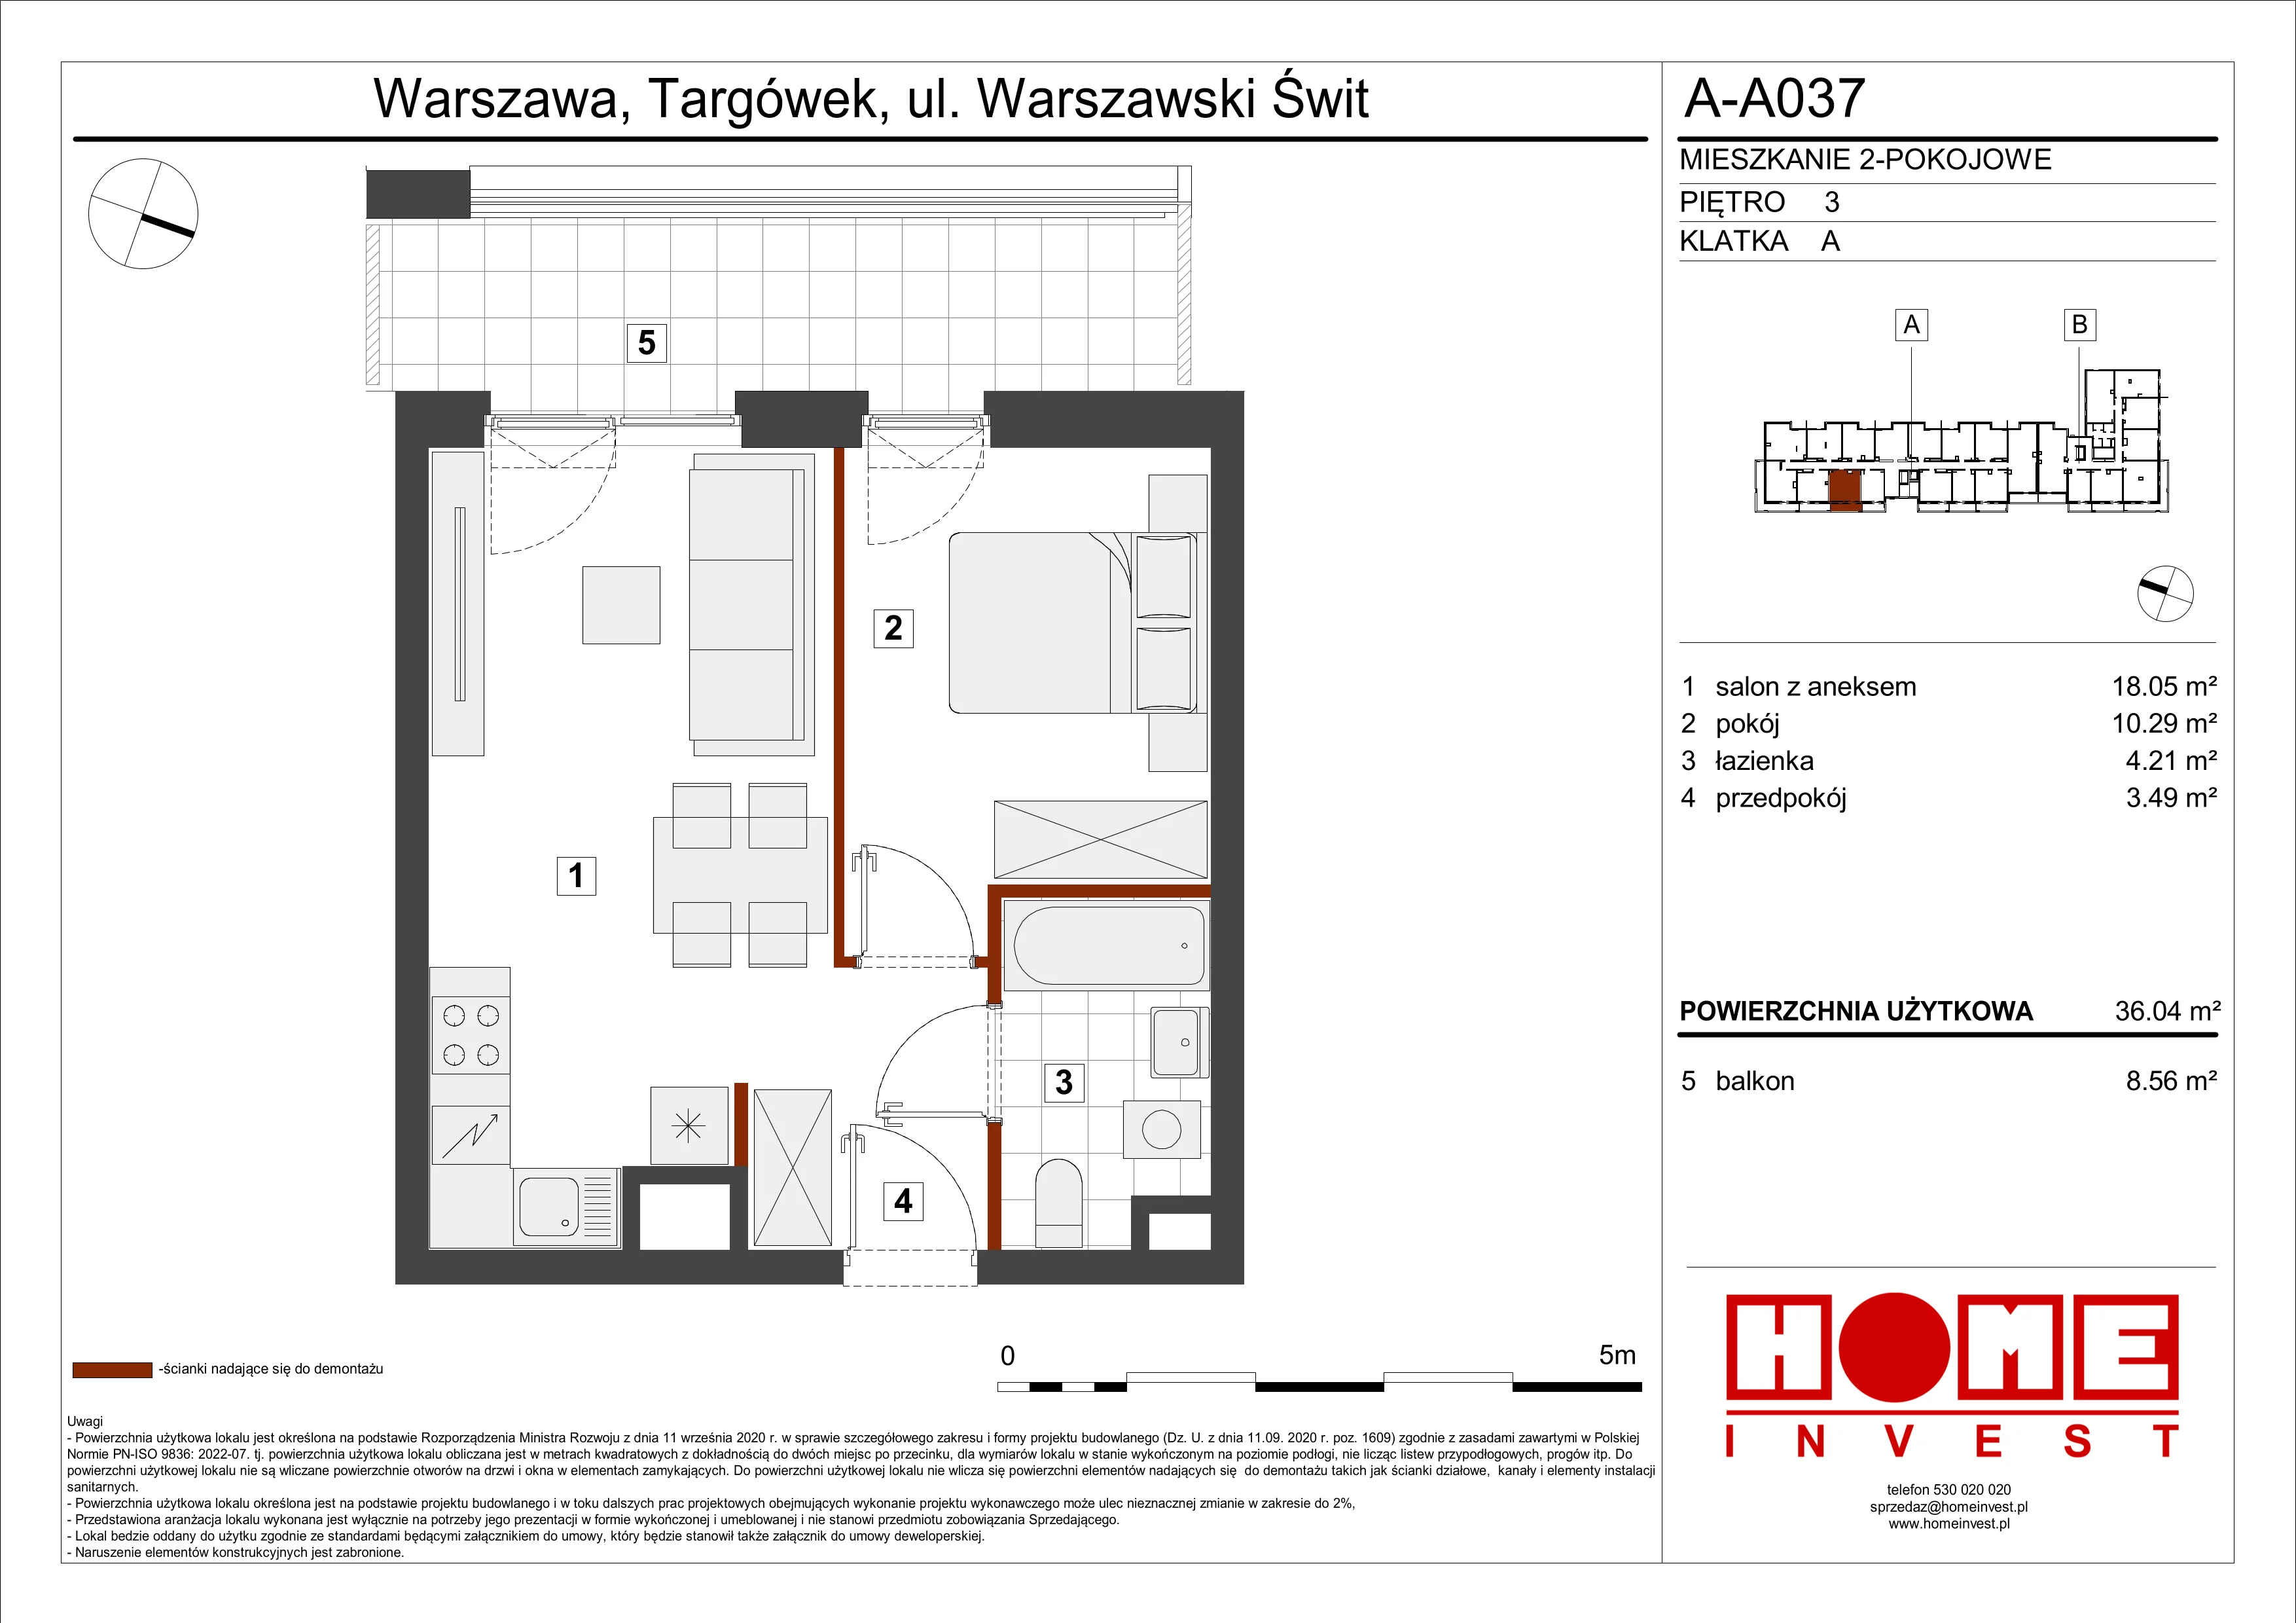 Mieszkanie 36,04 m², piętro 3, oferta nr A-A037, Warszawski Świt, Warszawa, Targówek, Bródno, ul. Warszawski Świt 5